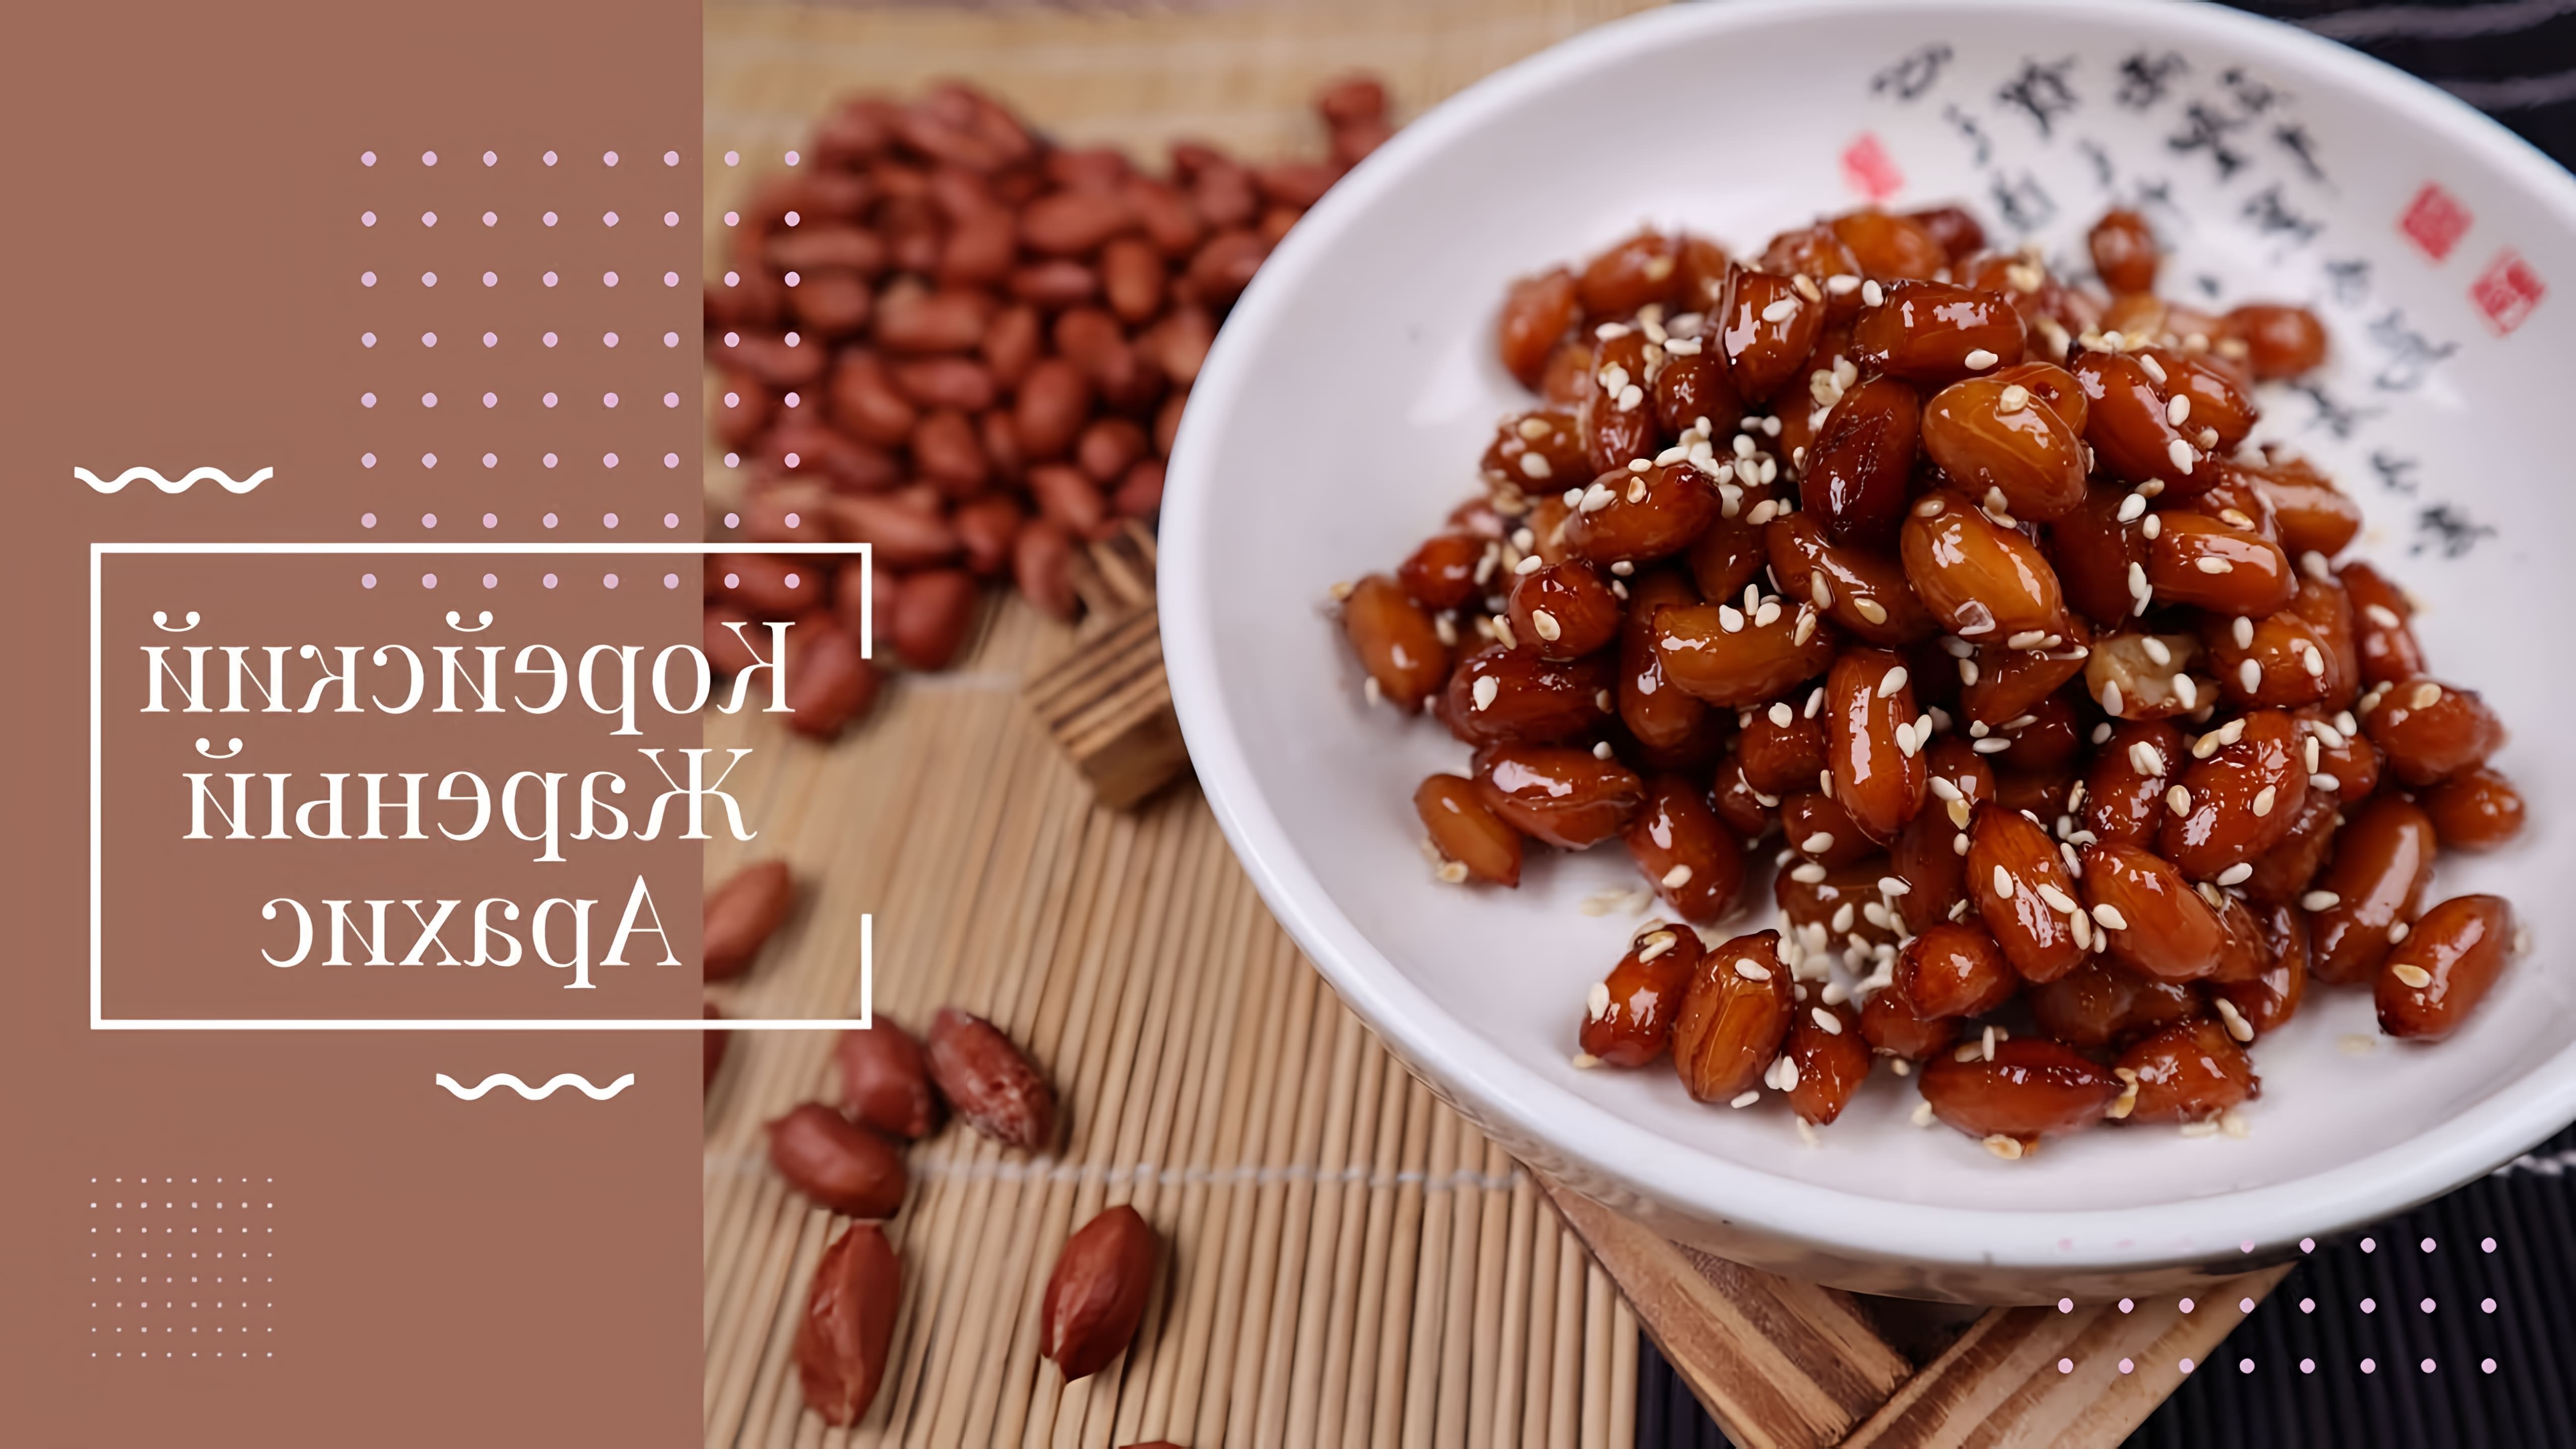 В этом видео демонстрируется рецепт приготовления корейского жареного арахиса